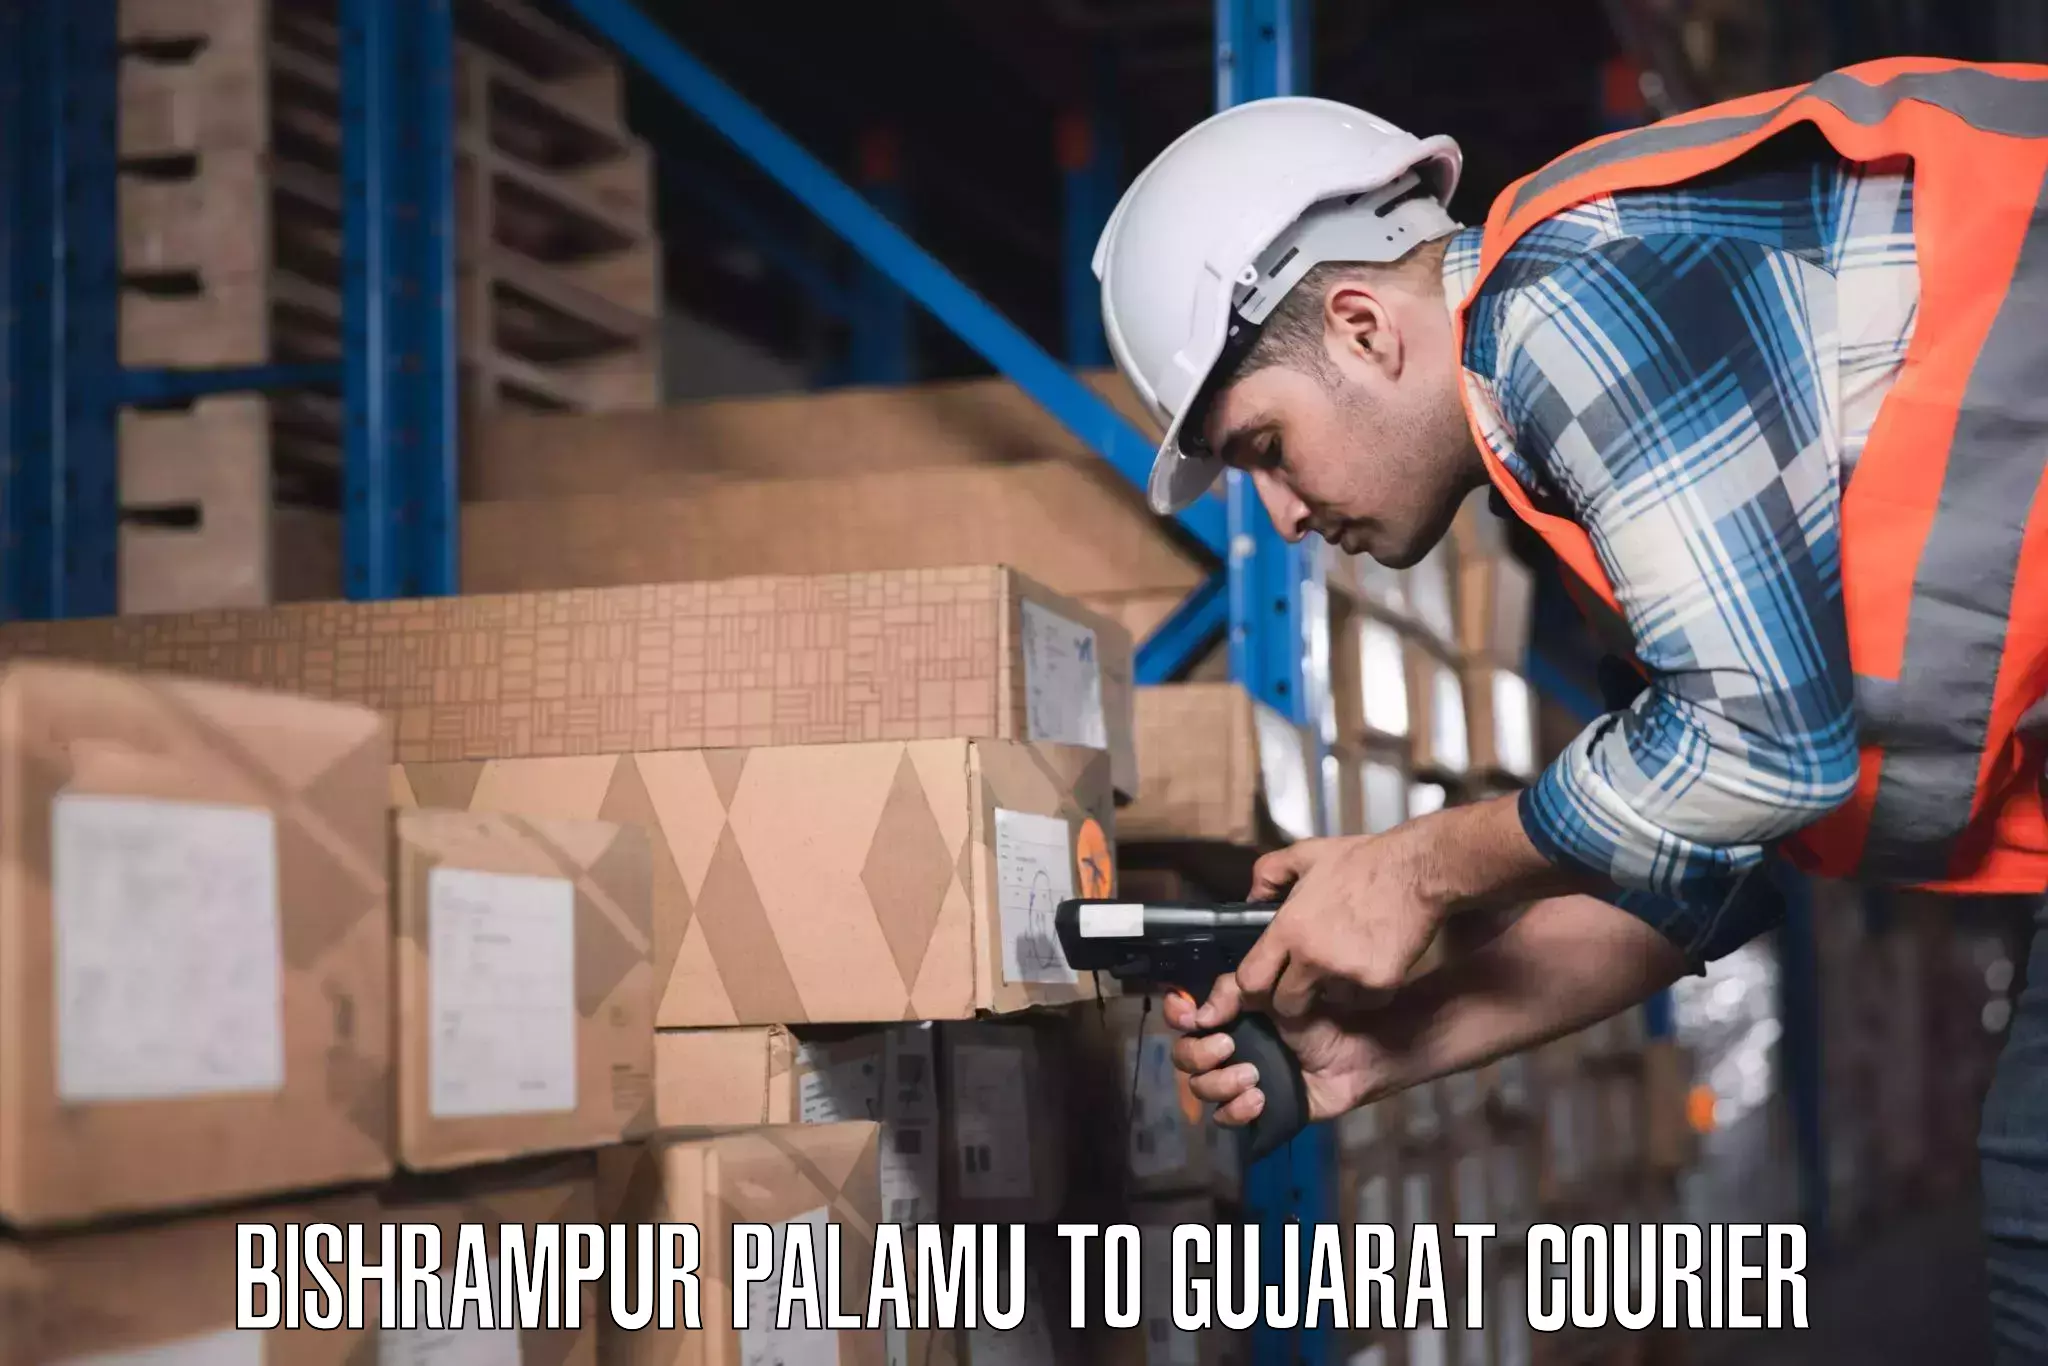 Luggage shipment processing Bishrampur Palamu to Dhanera